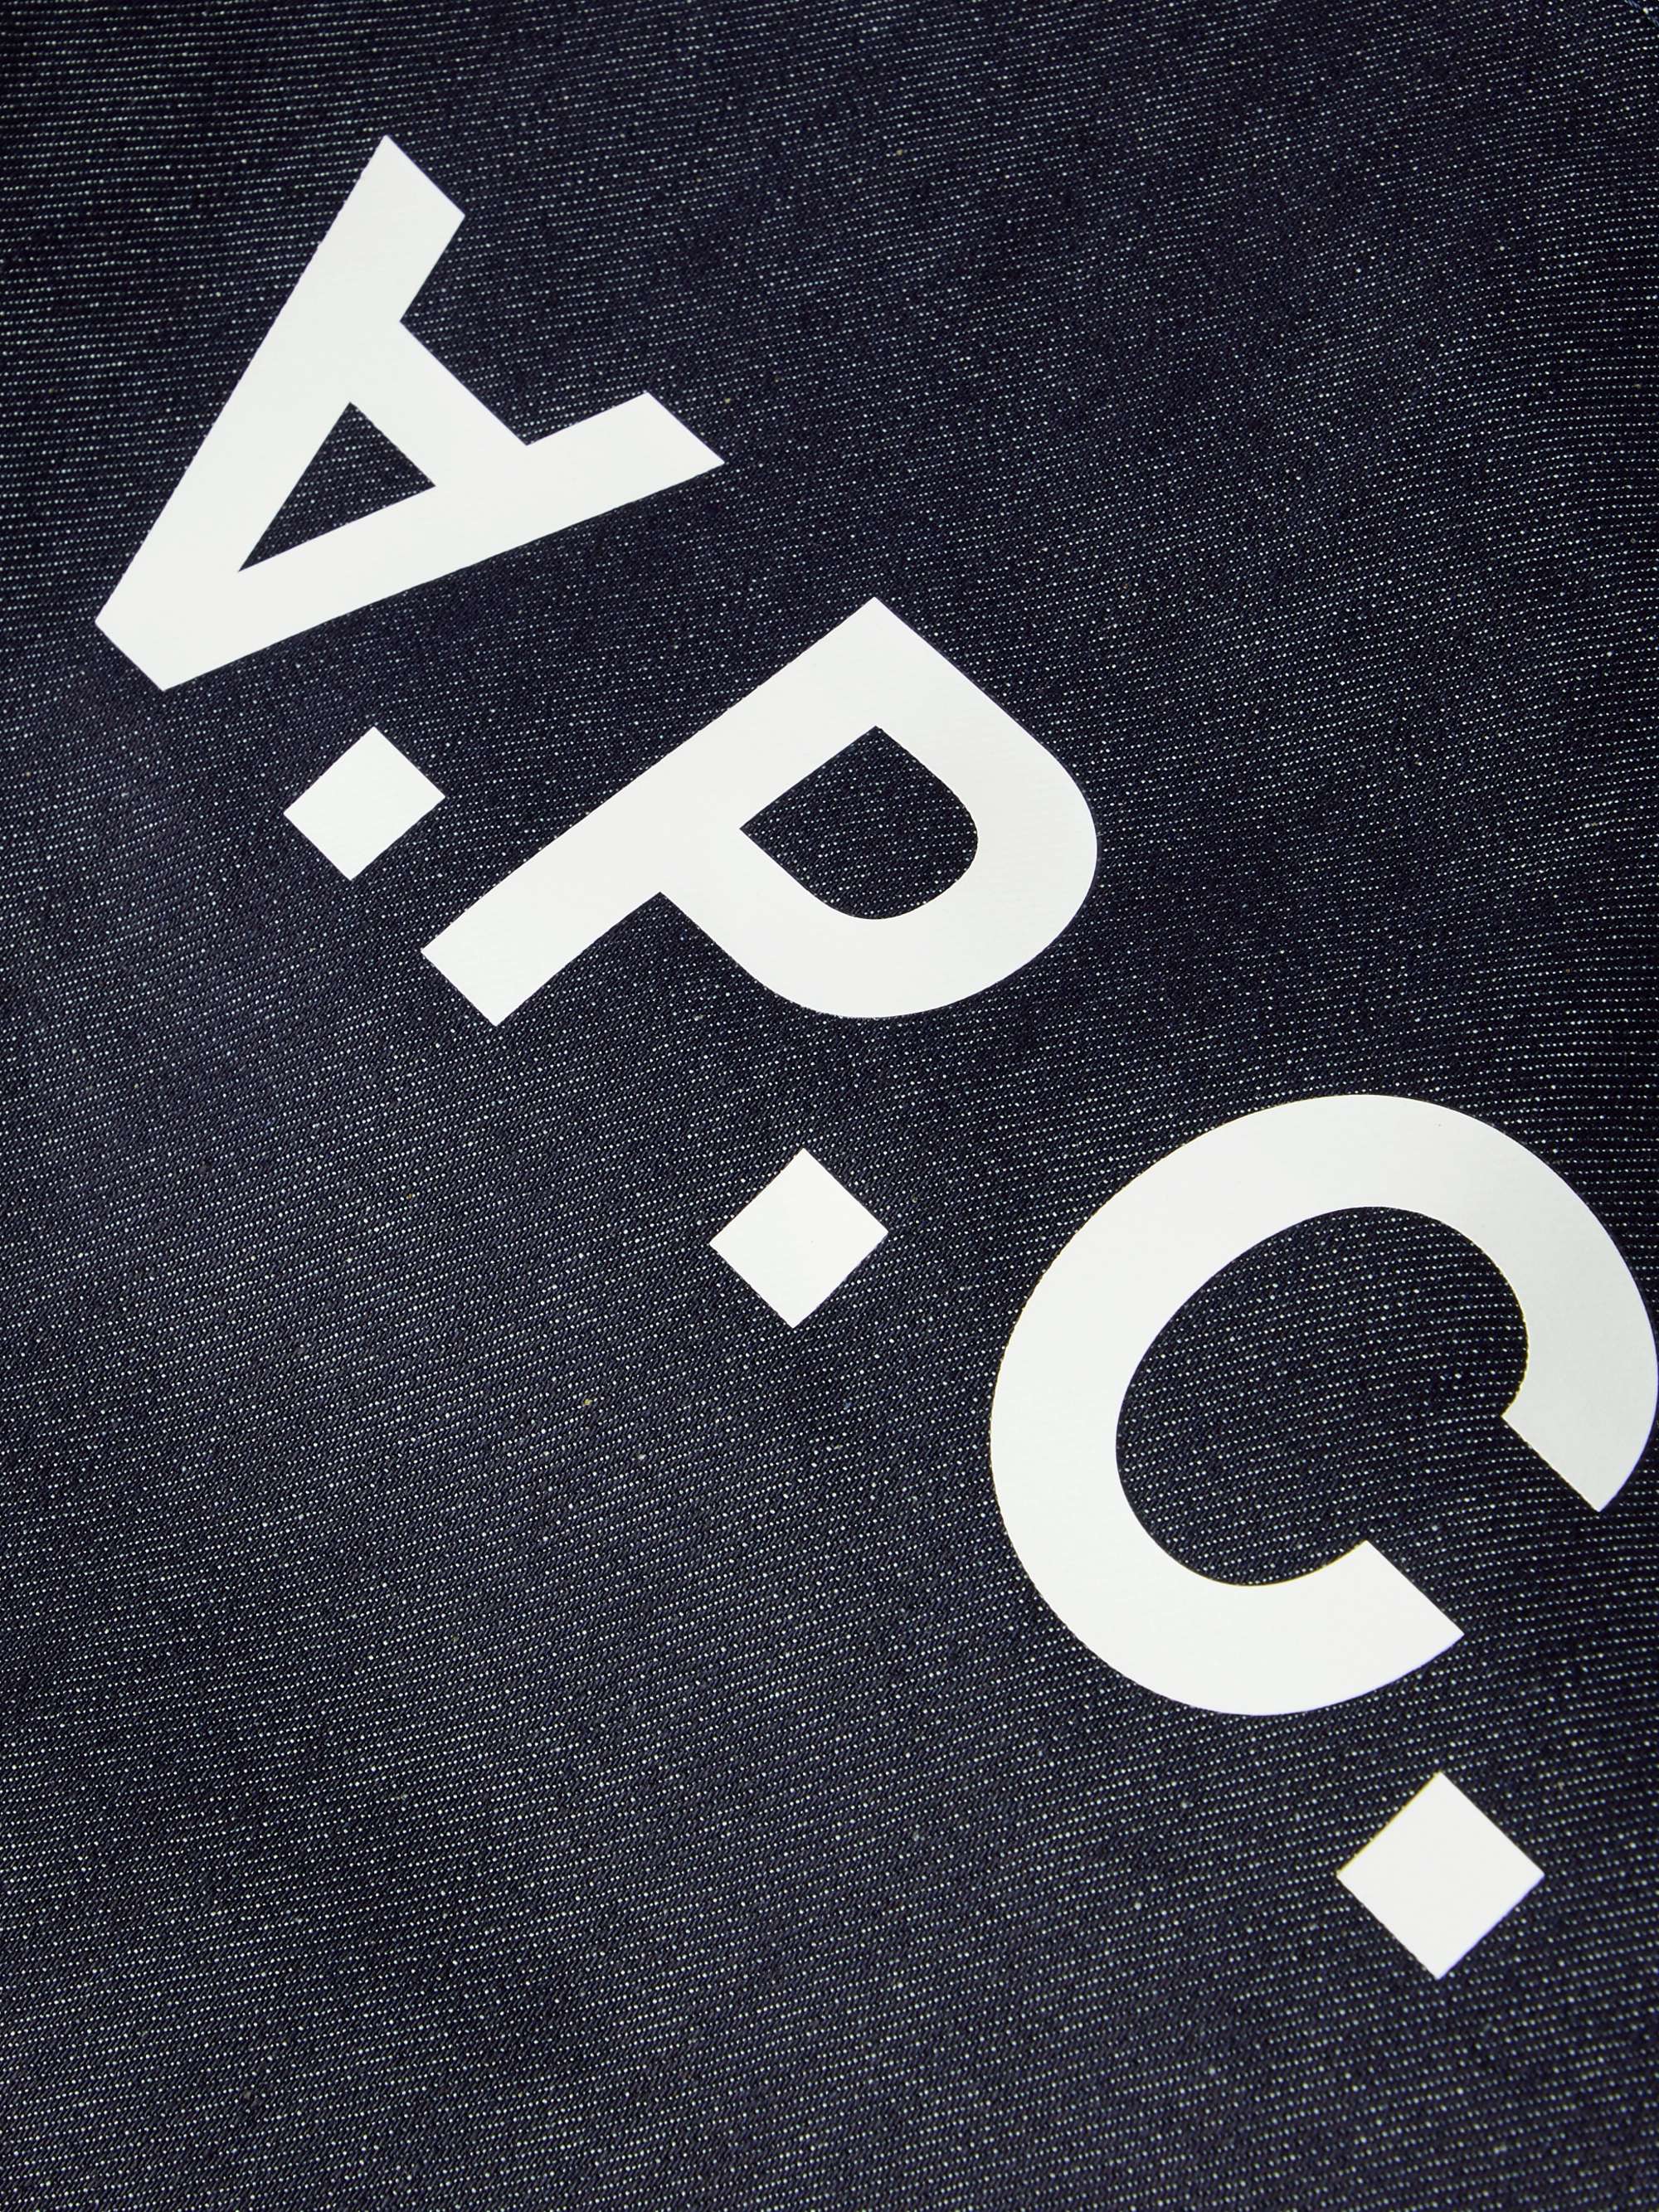 A.P.C. Logo-Print Denim Tote Bag